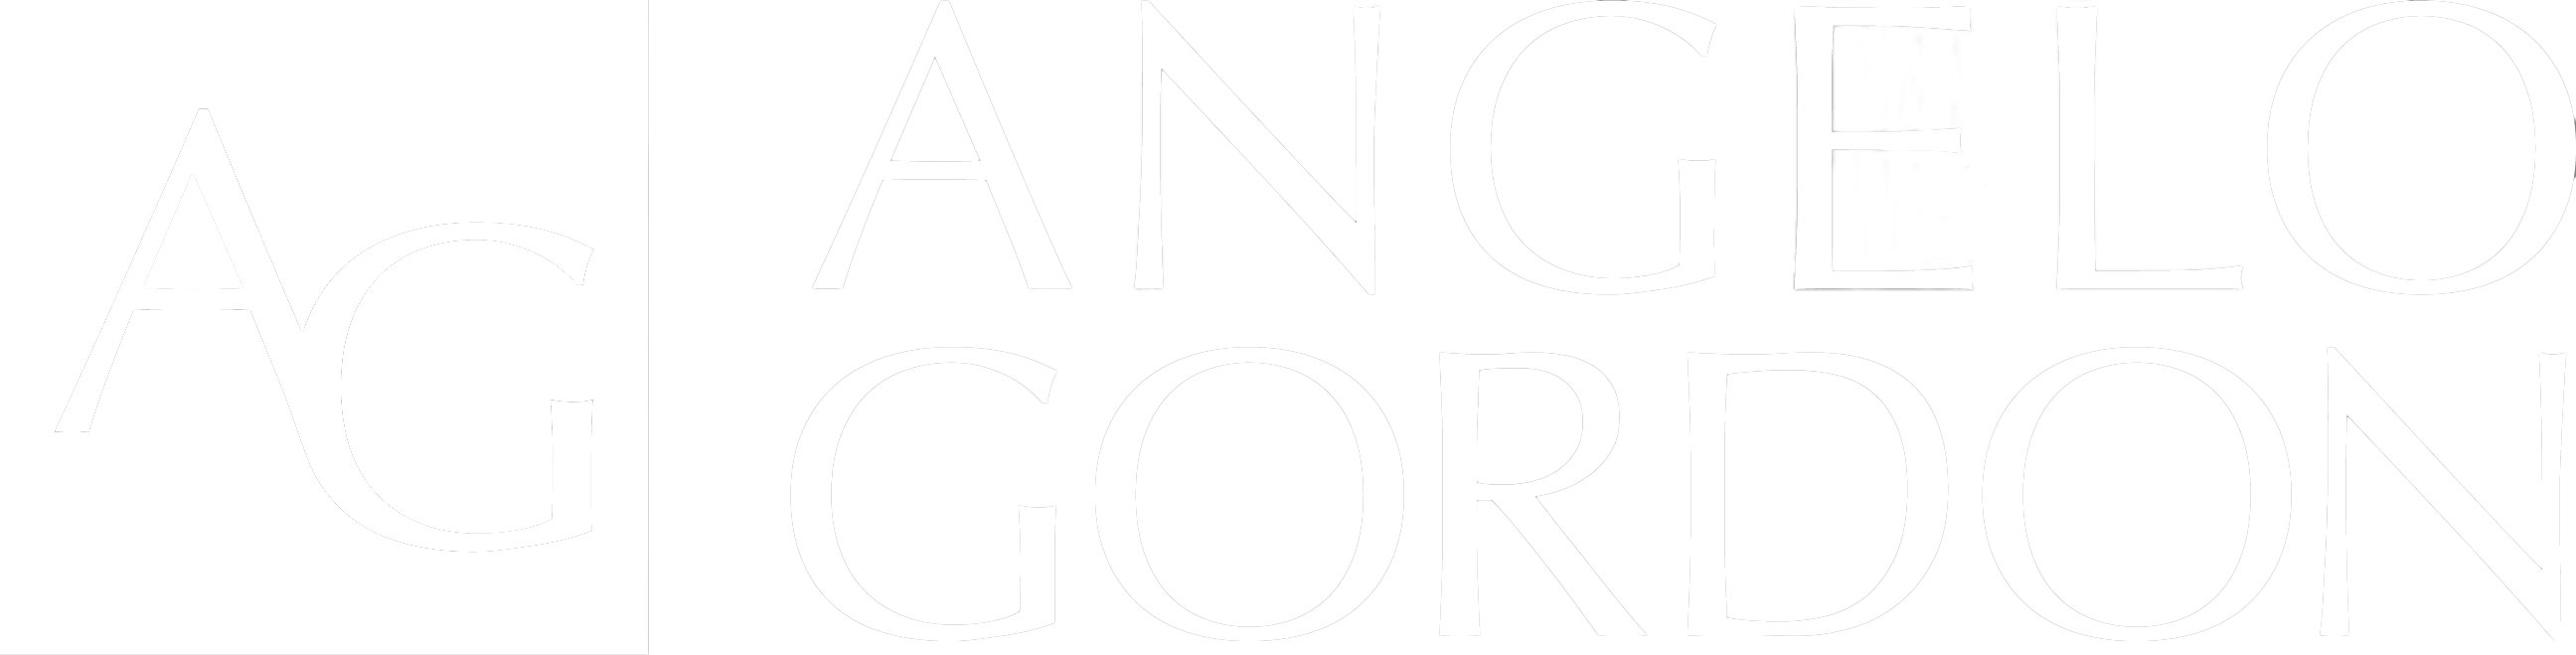 angelo gordon white logo